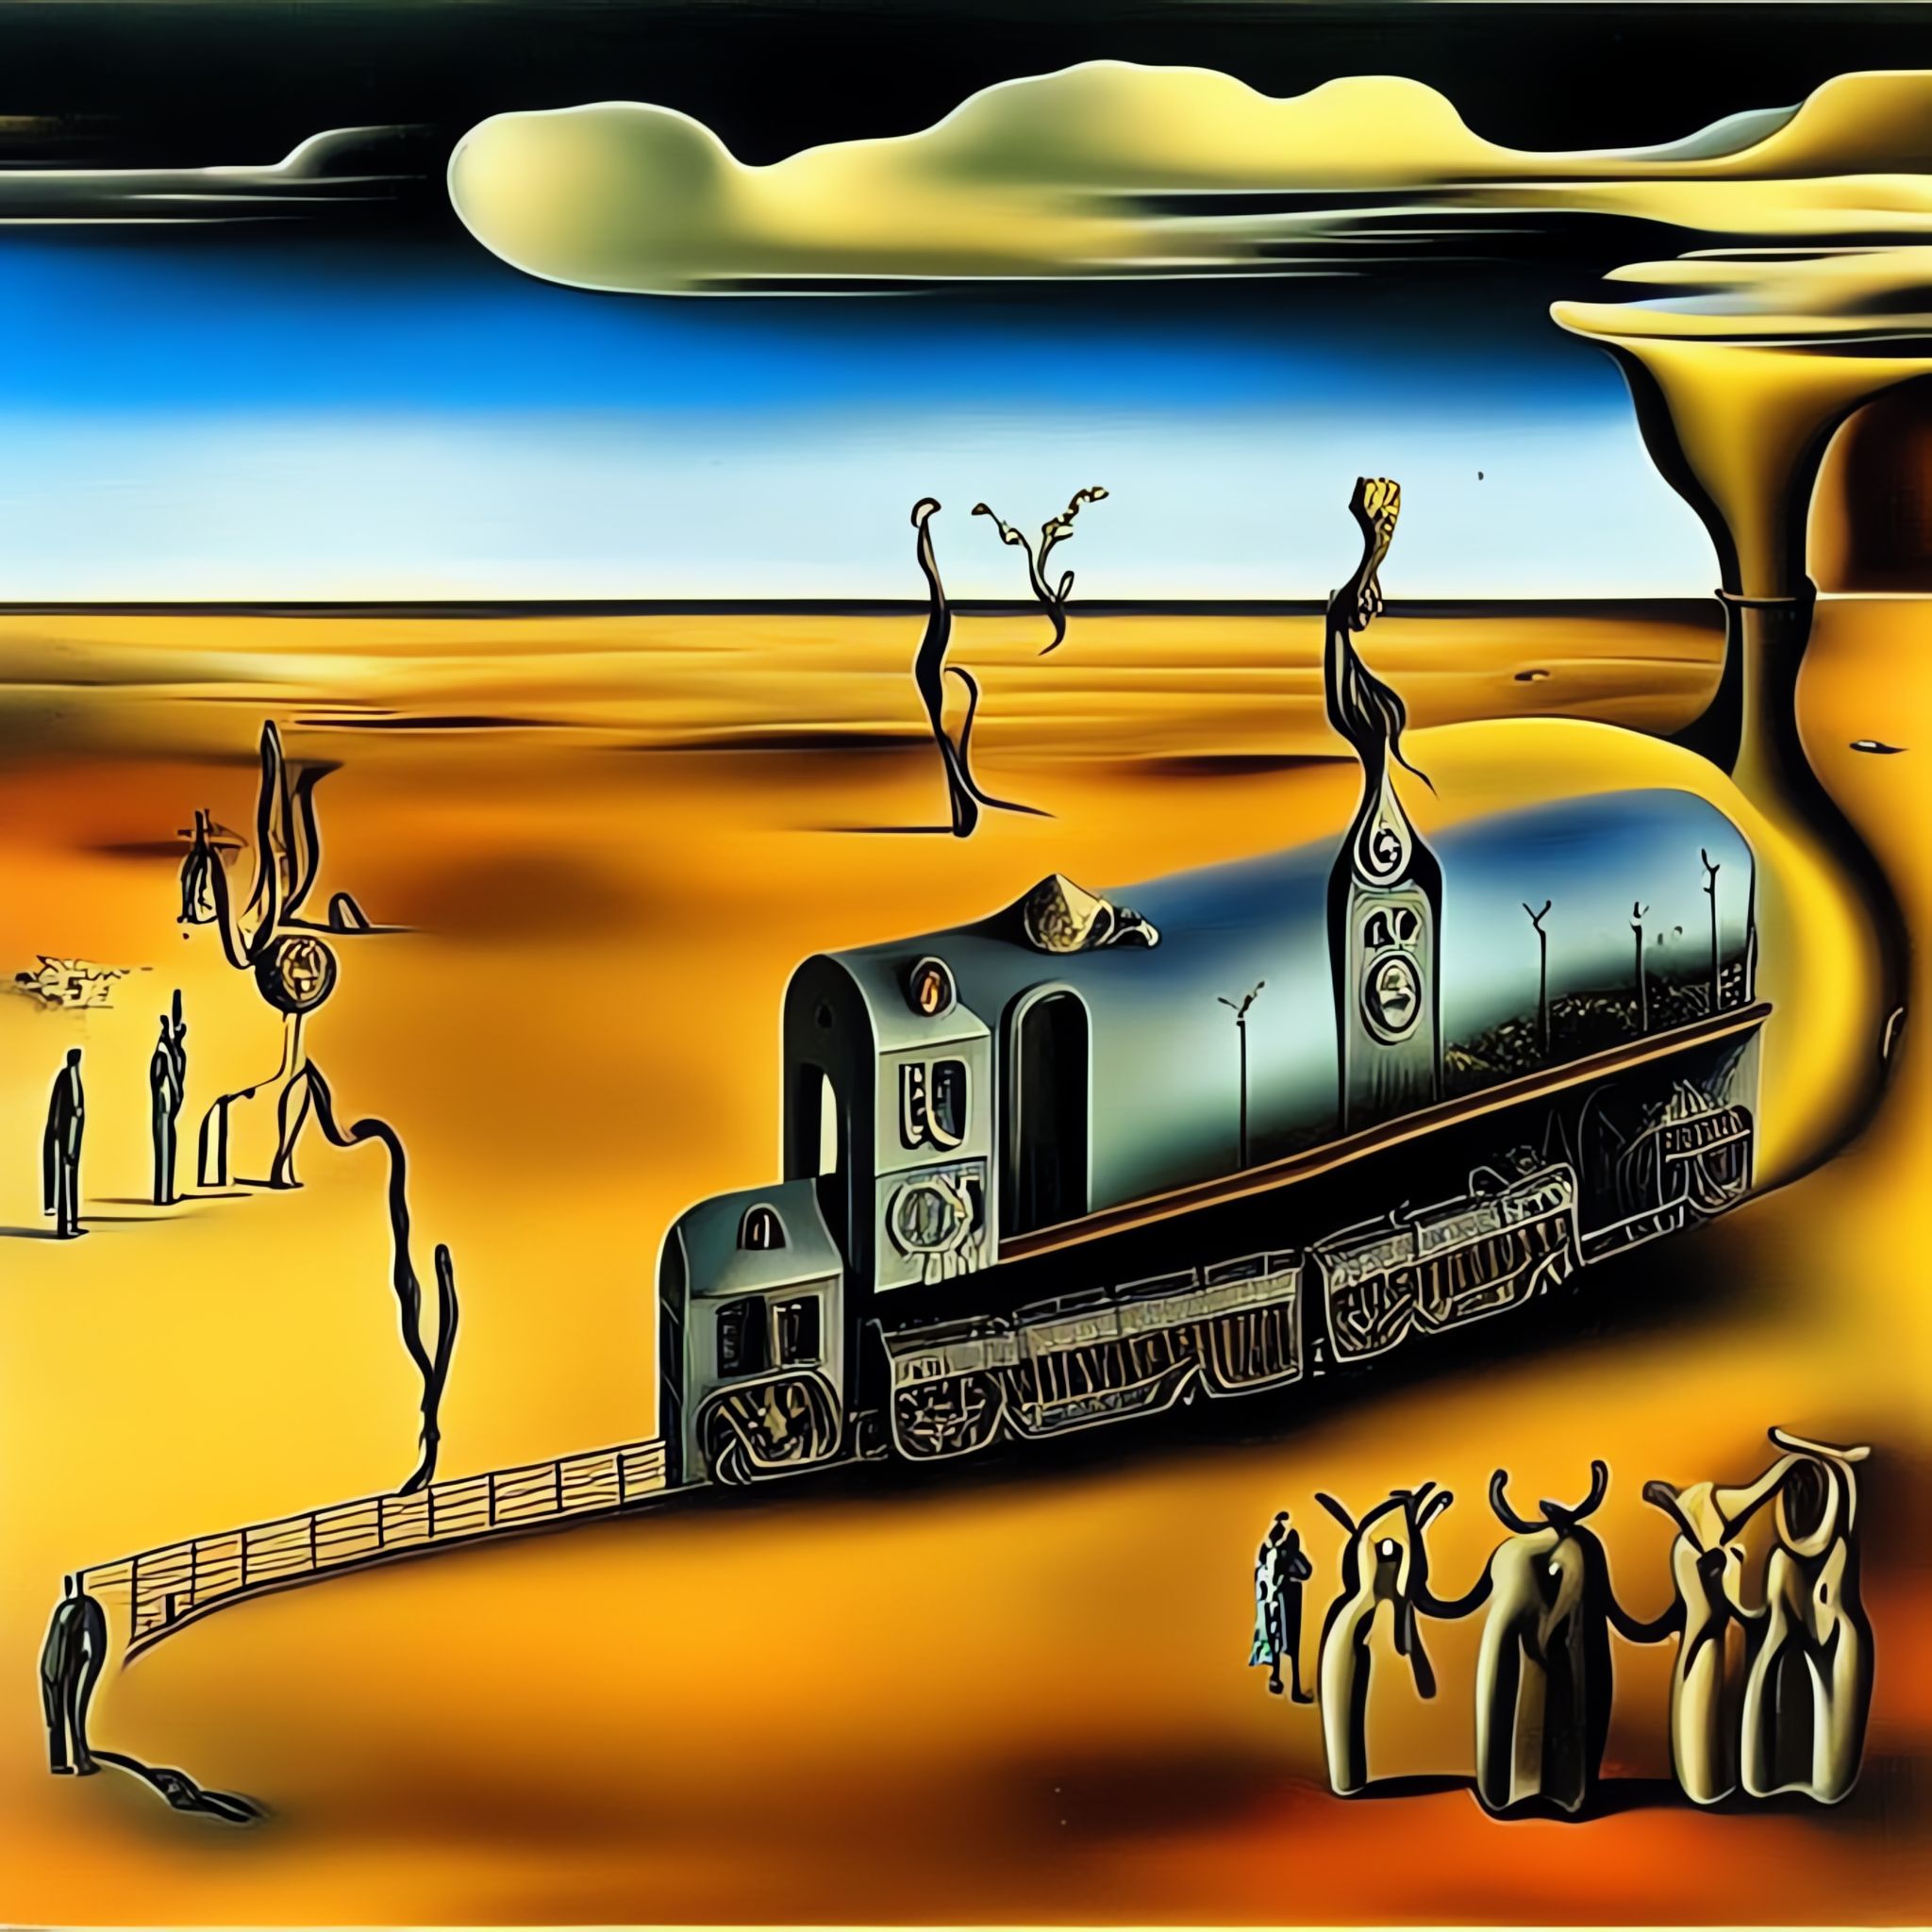 Melting-Vintage-train-Salvador-Dali-surrealism-xvw4